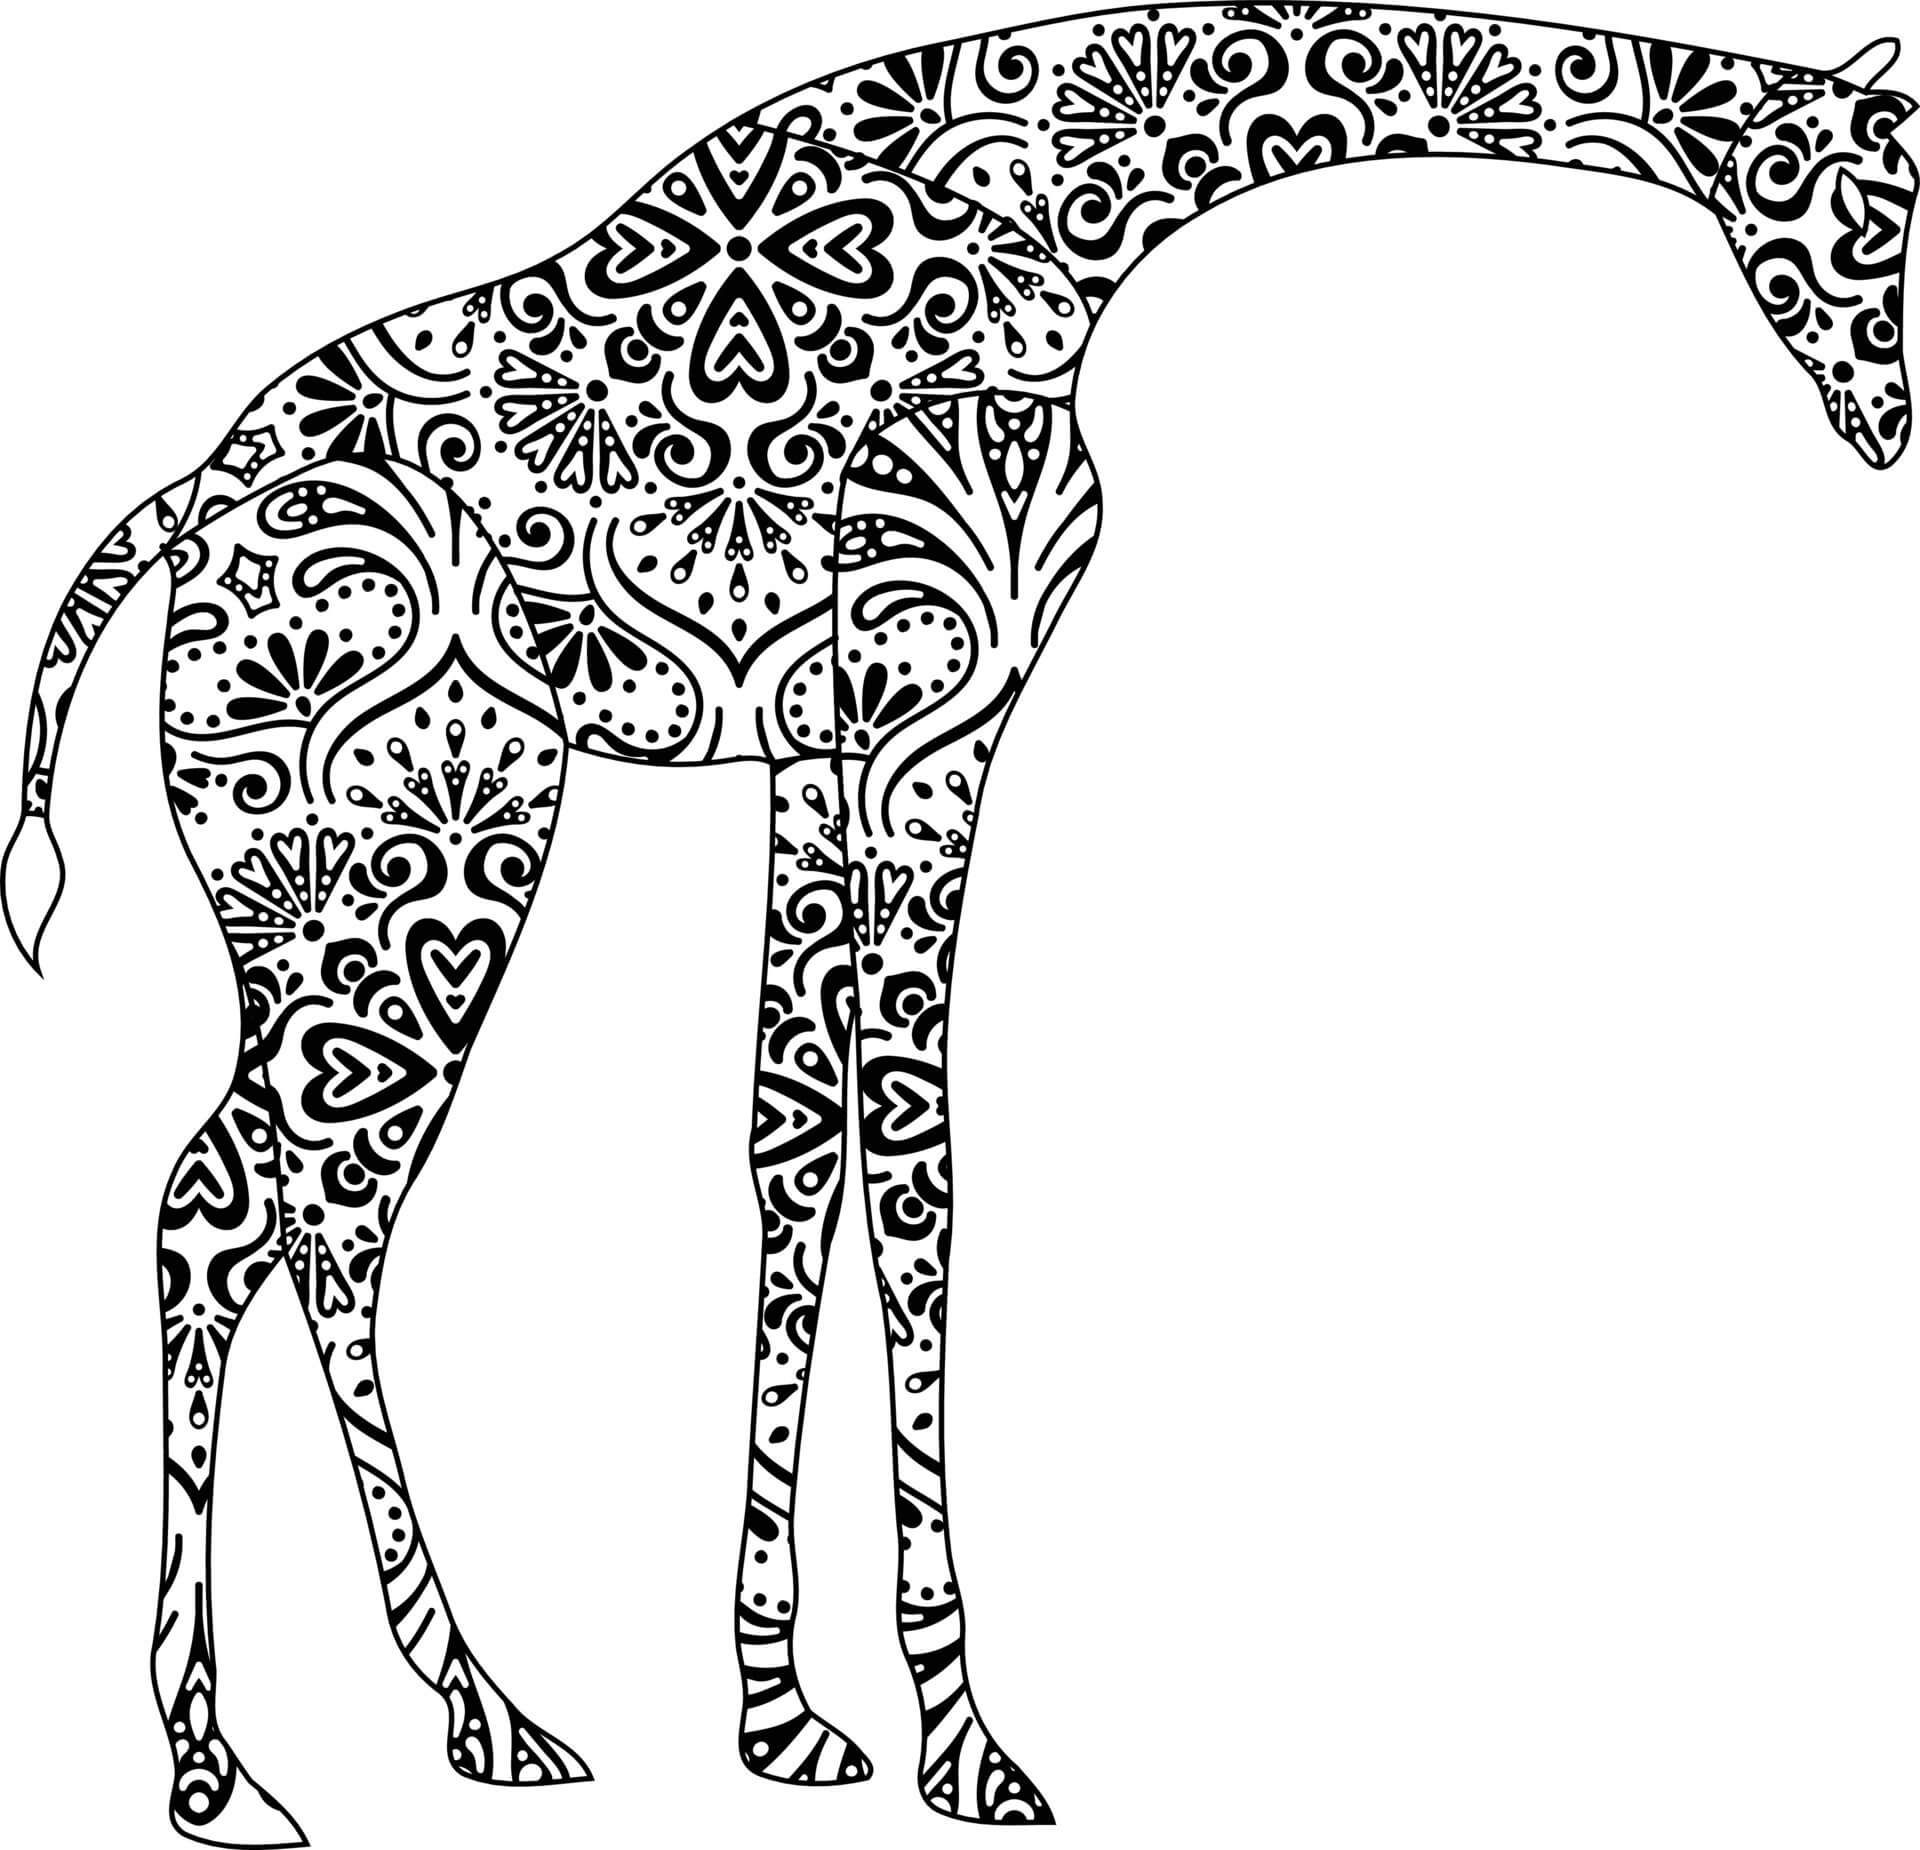 Mandala Giraffe Coloring Page - Sheet 3 Mandalas